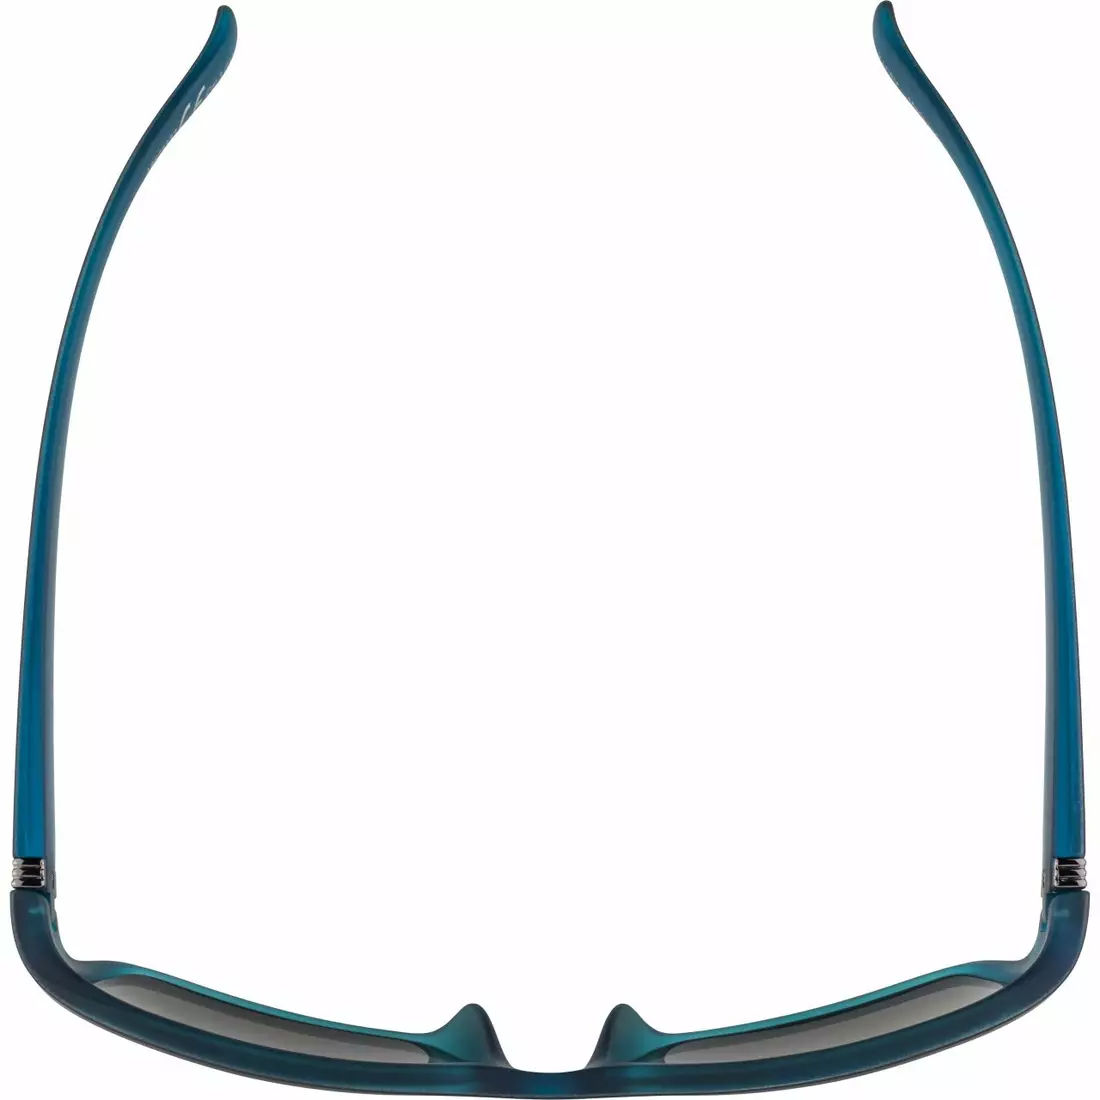 ALPINA sport szemüveg kacey black matt-blue A8523333